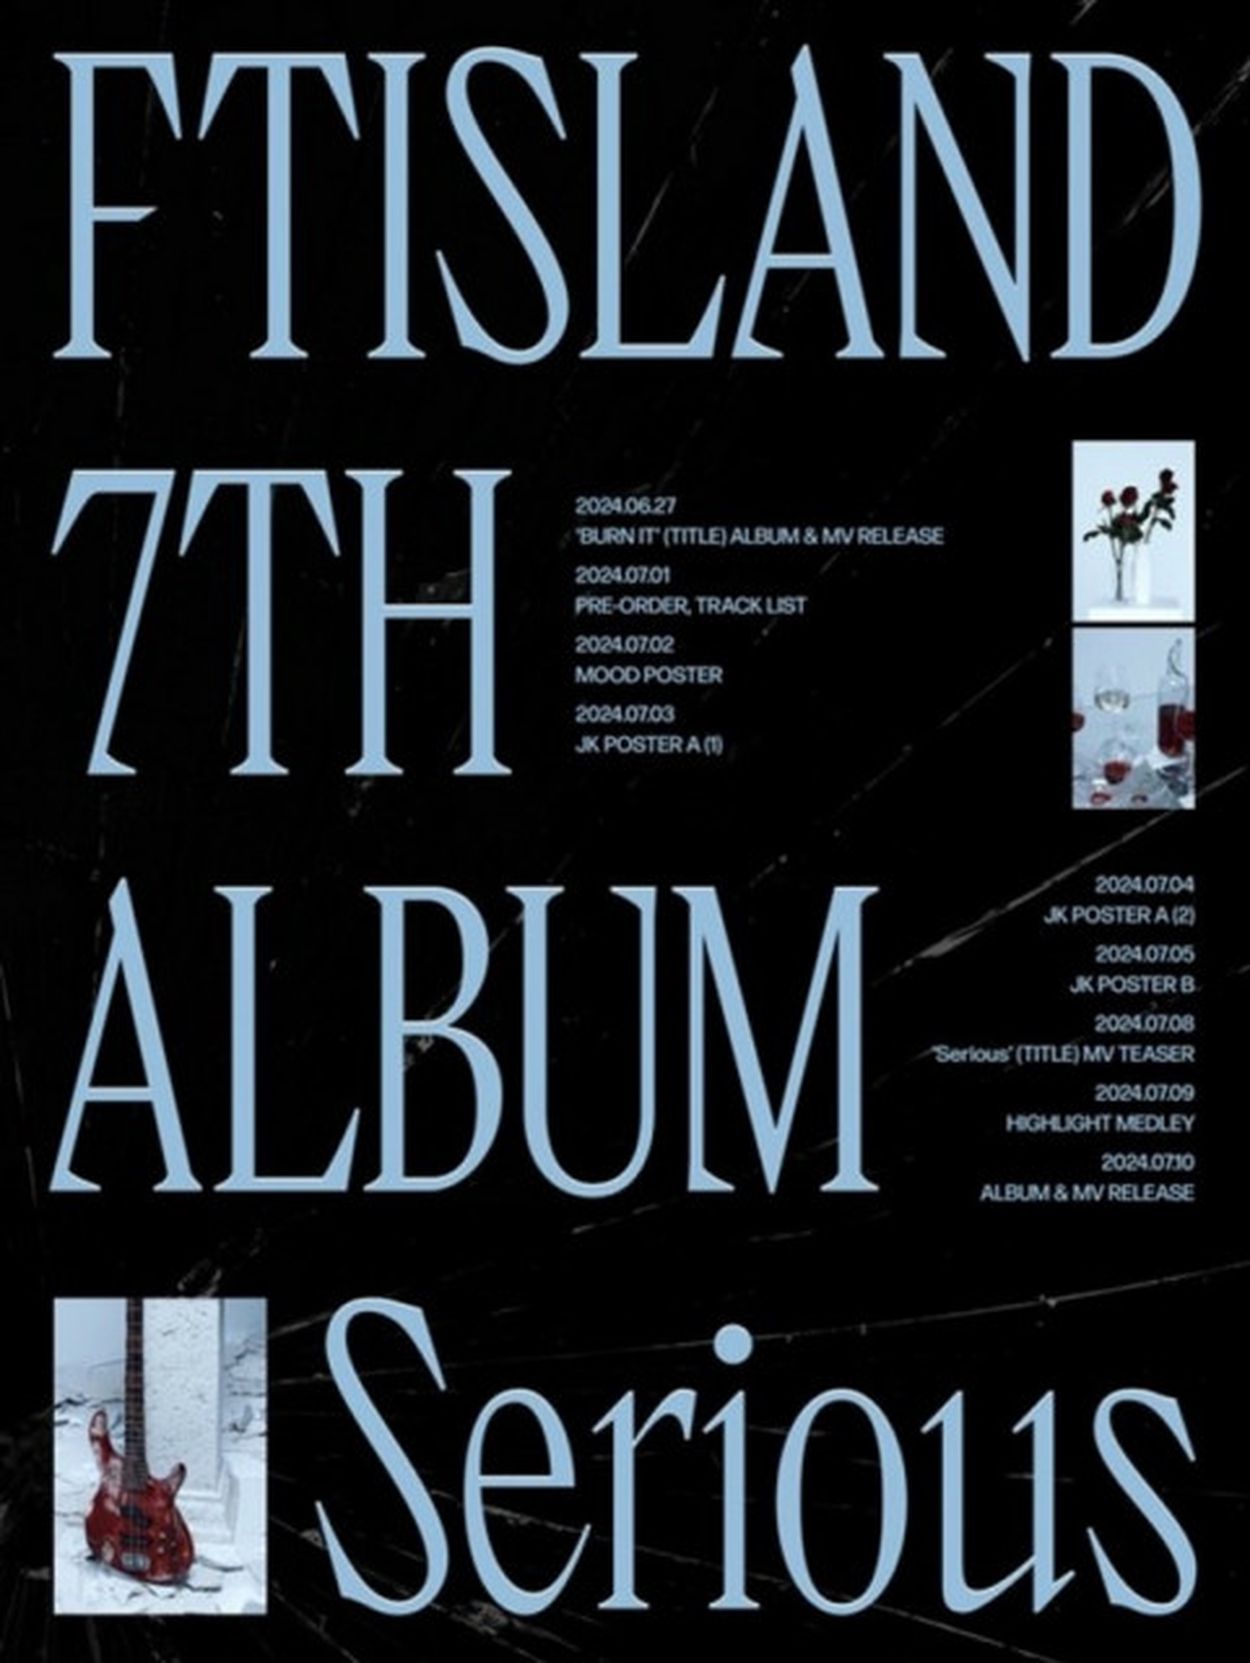 FTISLAND」、7月10日にダブルタイトル曲でカムバック…7thフルアルバムのプランポスター公開(WoW!Korea) - goo ニュース